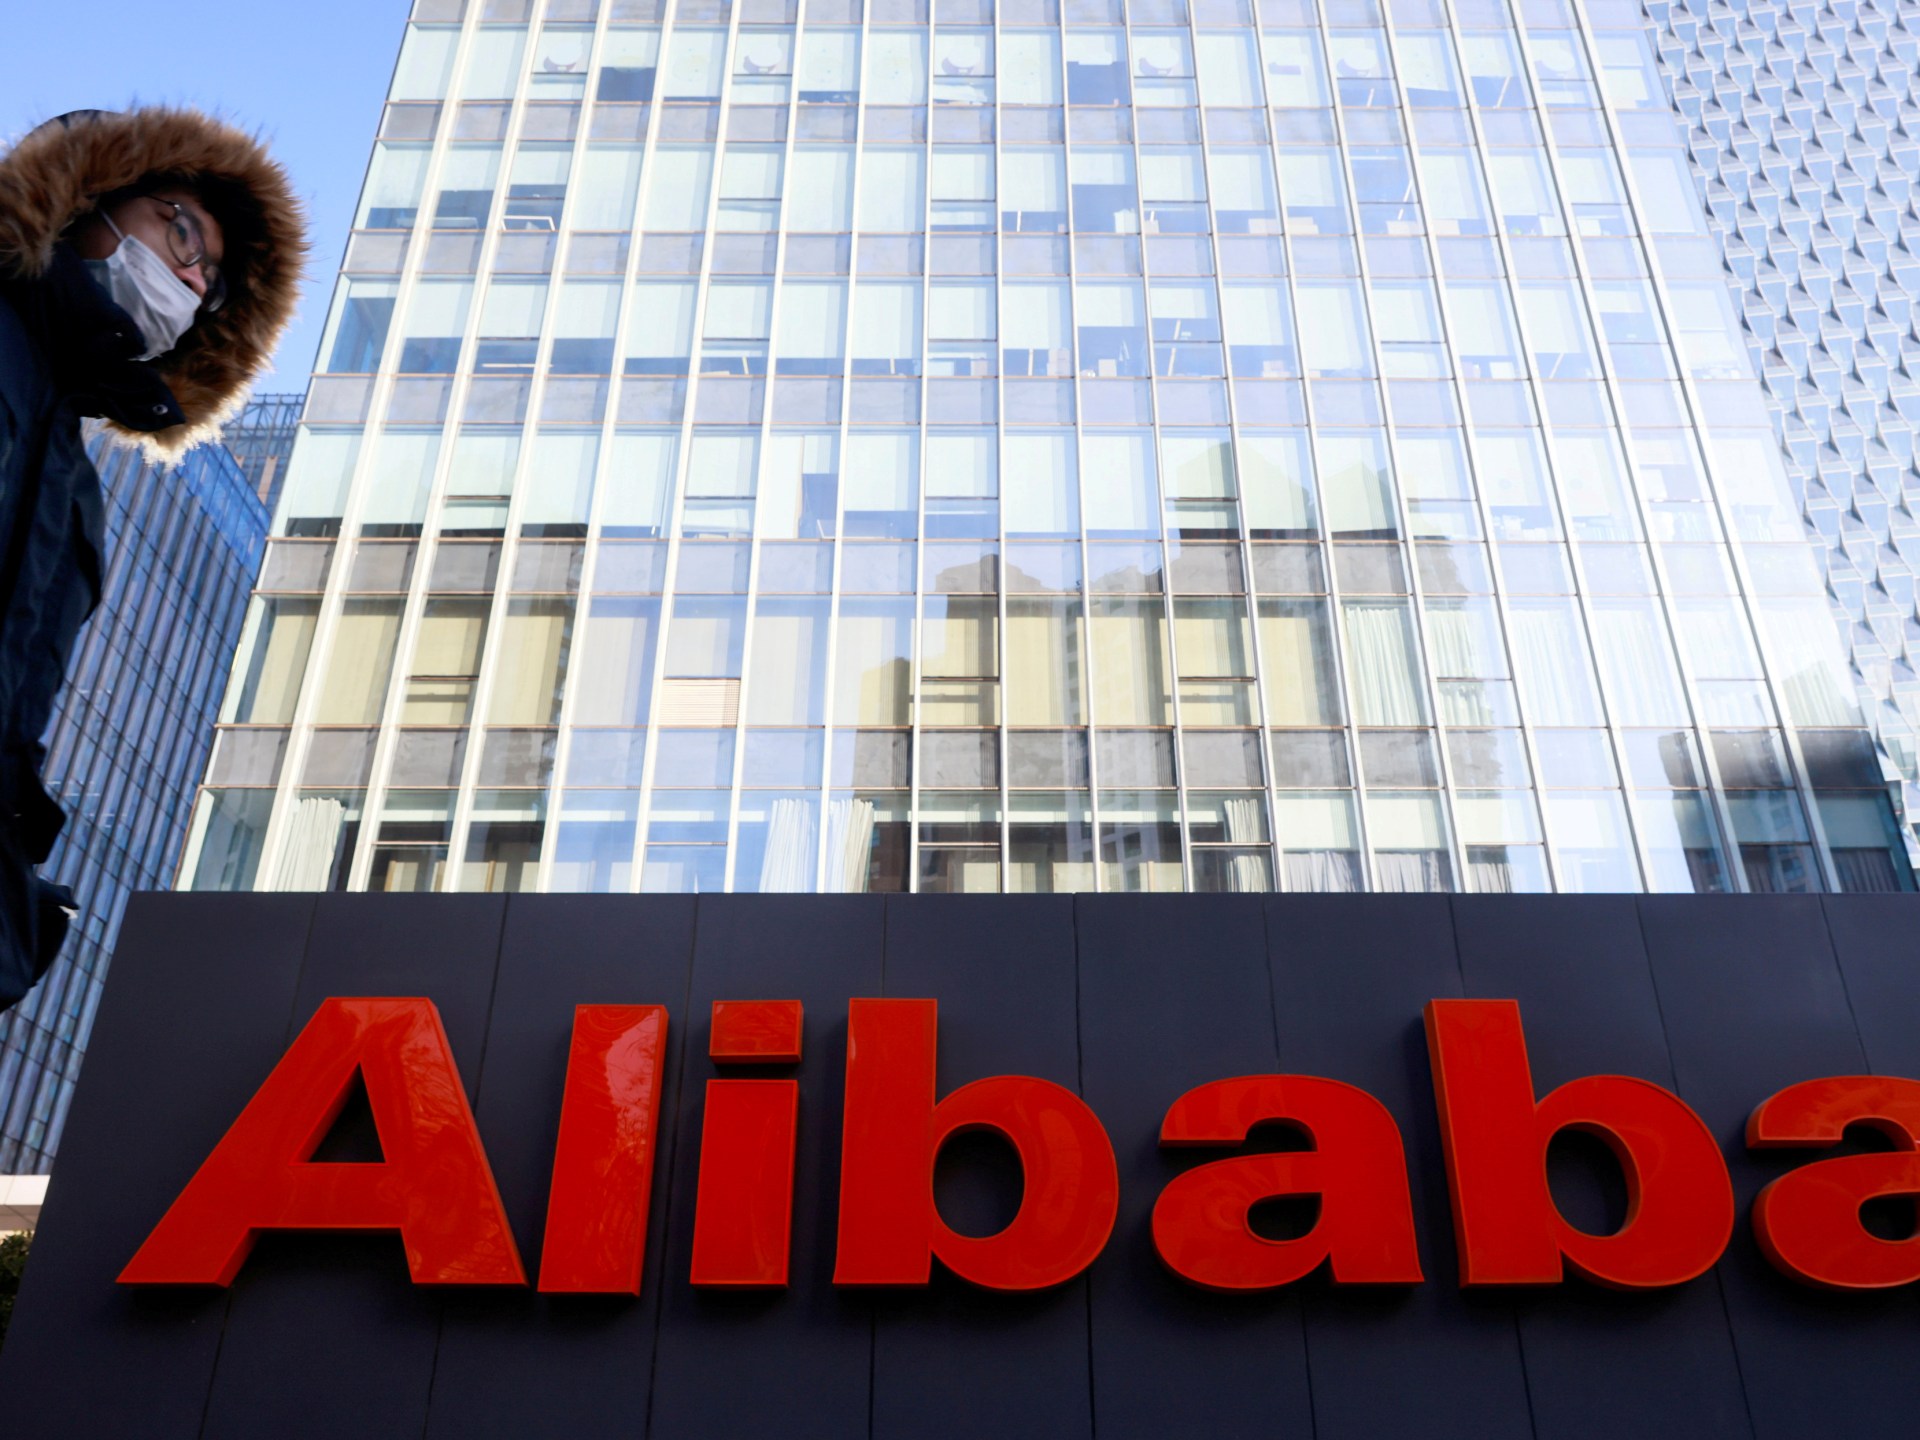 Tawaran perpisahan Alibaba meningkatkan harapan untuk mengakhiri tindakan keras teknologi China |  Bisnis dan ekonomi